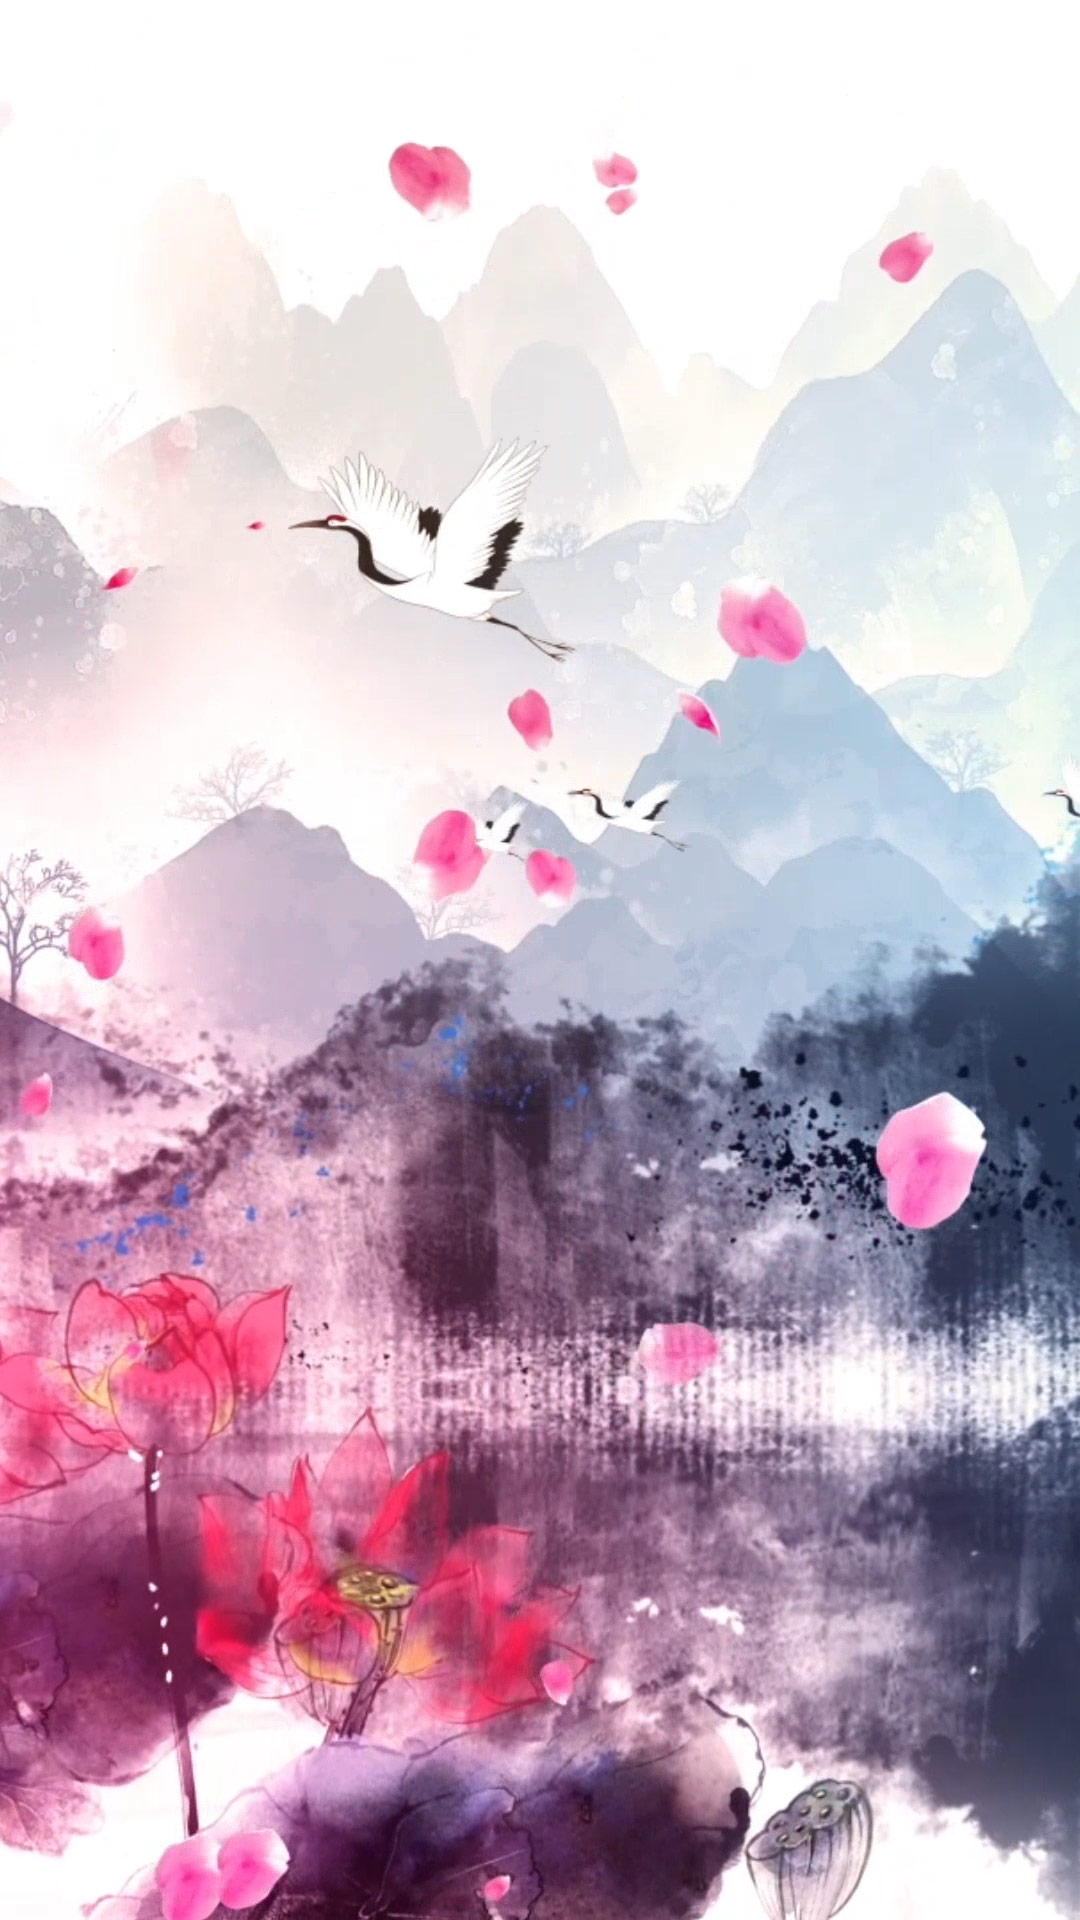 大气中国风水墨山水动画背景视频素材-livekong来悟空素材